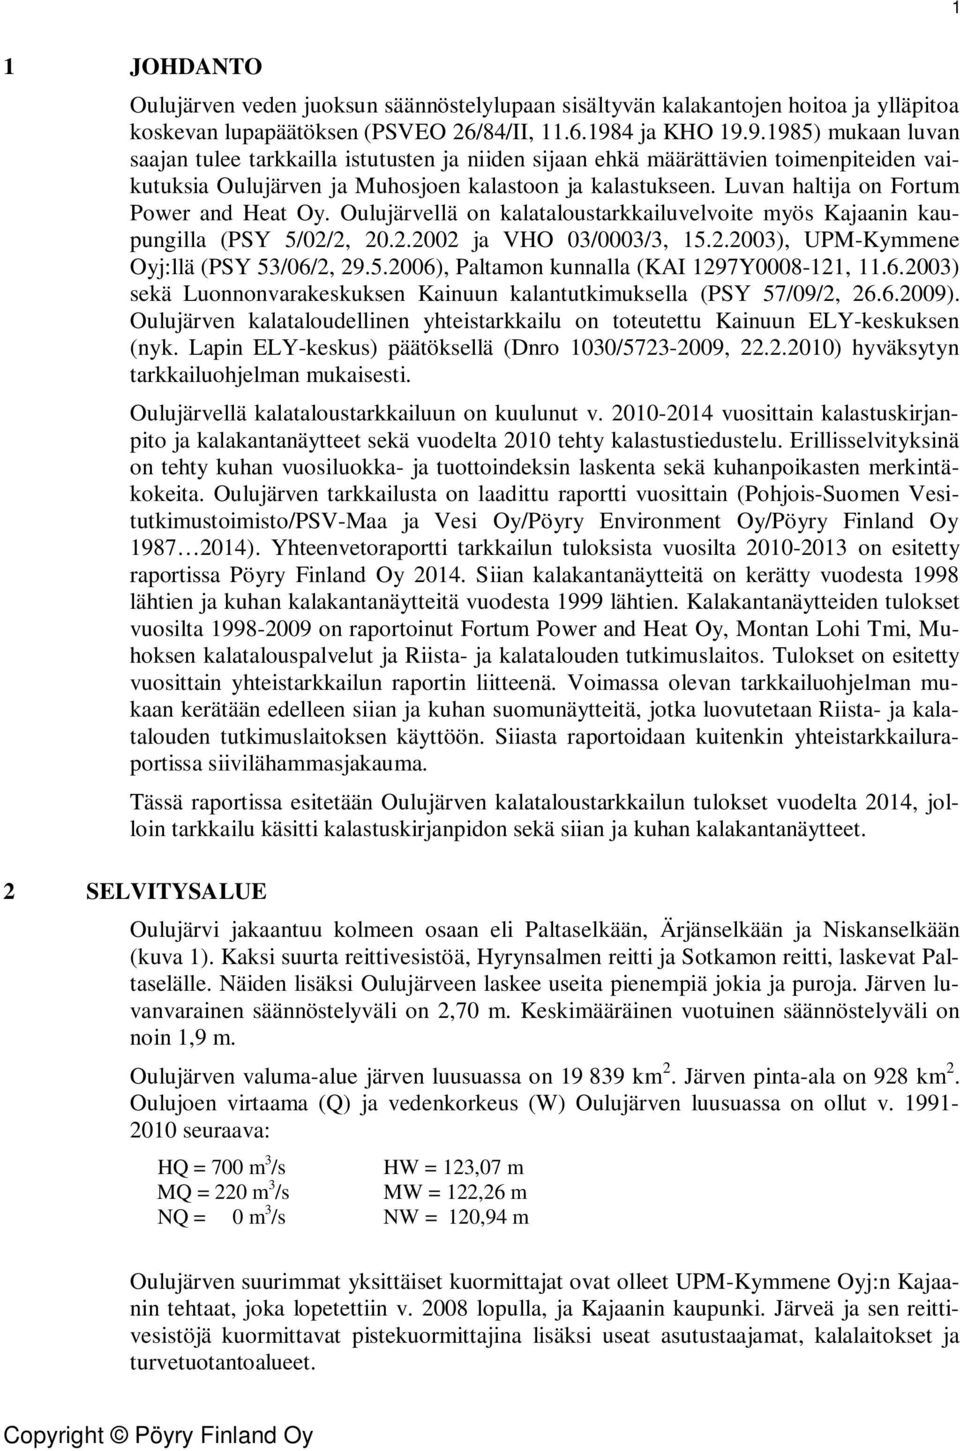 Luvan haltija on Fortum Power and Heat Oy. Oulujärvellä on kalataloustarkkailuvelvoite myös Kajaanin kaupungilla (PSY 5/2/2, 2.2.22 ja VHO 3/3/3, 15.2.23), UPM-Kymmene Oyj:llä (PSY 53/6/2, 29.5.26), Paltamon kunnalla (KAI 1297Y8-121, 11.